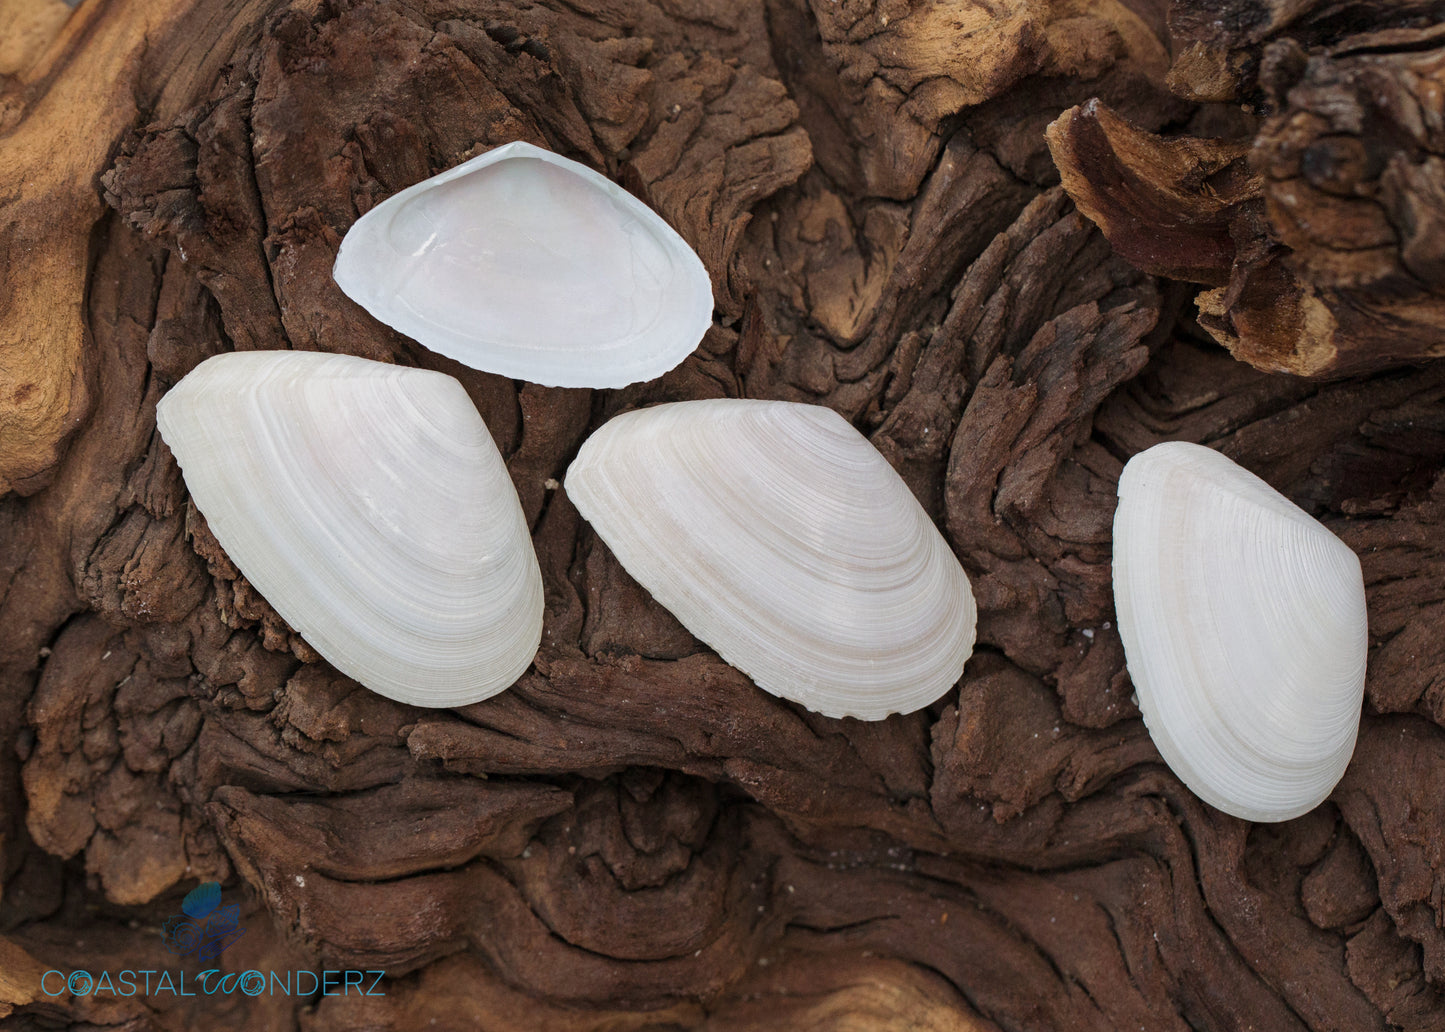 White Tellin Shells (Tellidora cristata)